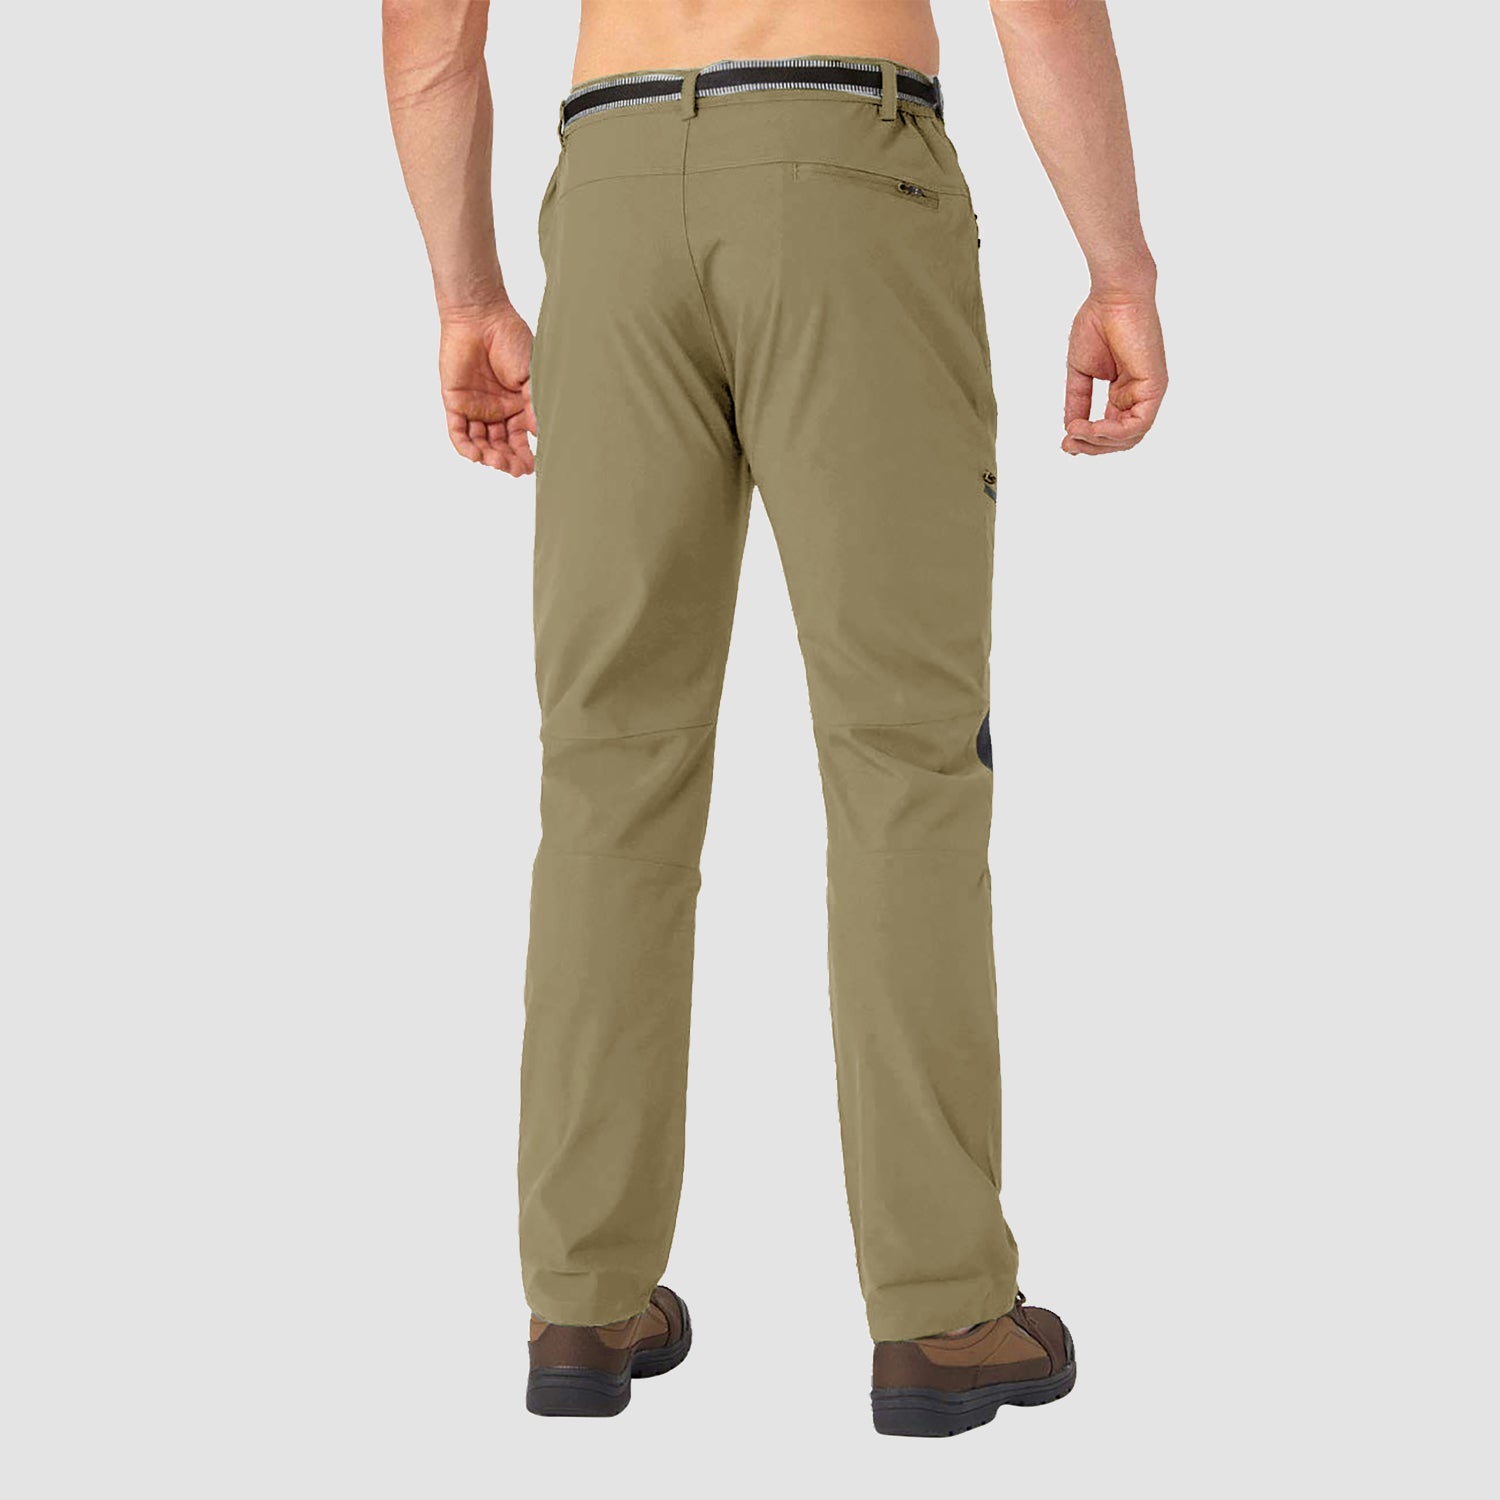 Men's Winter Pants Fleece Lined Ski Snow Pants Water Resistant with 4 Zip Pockets